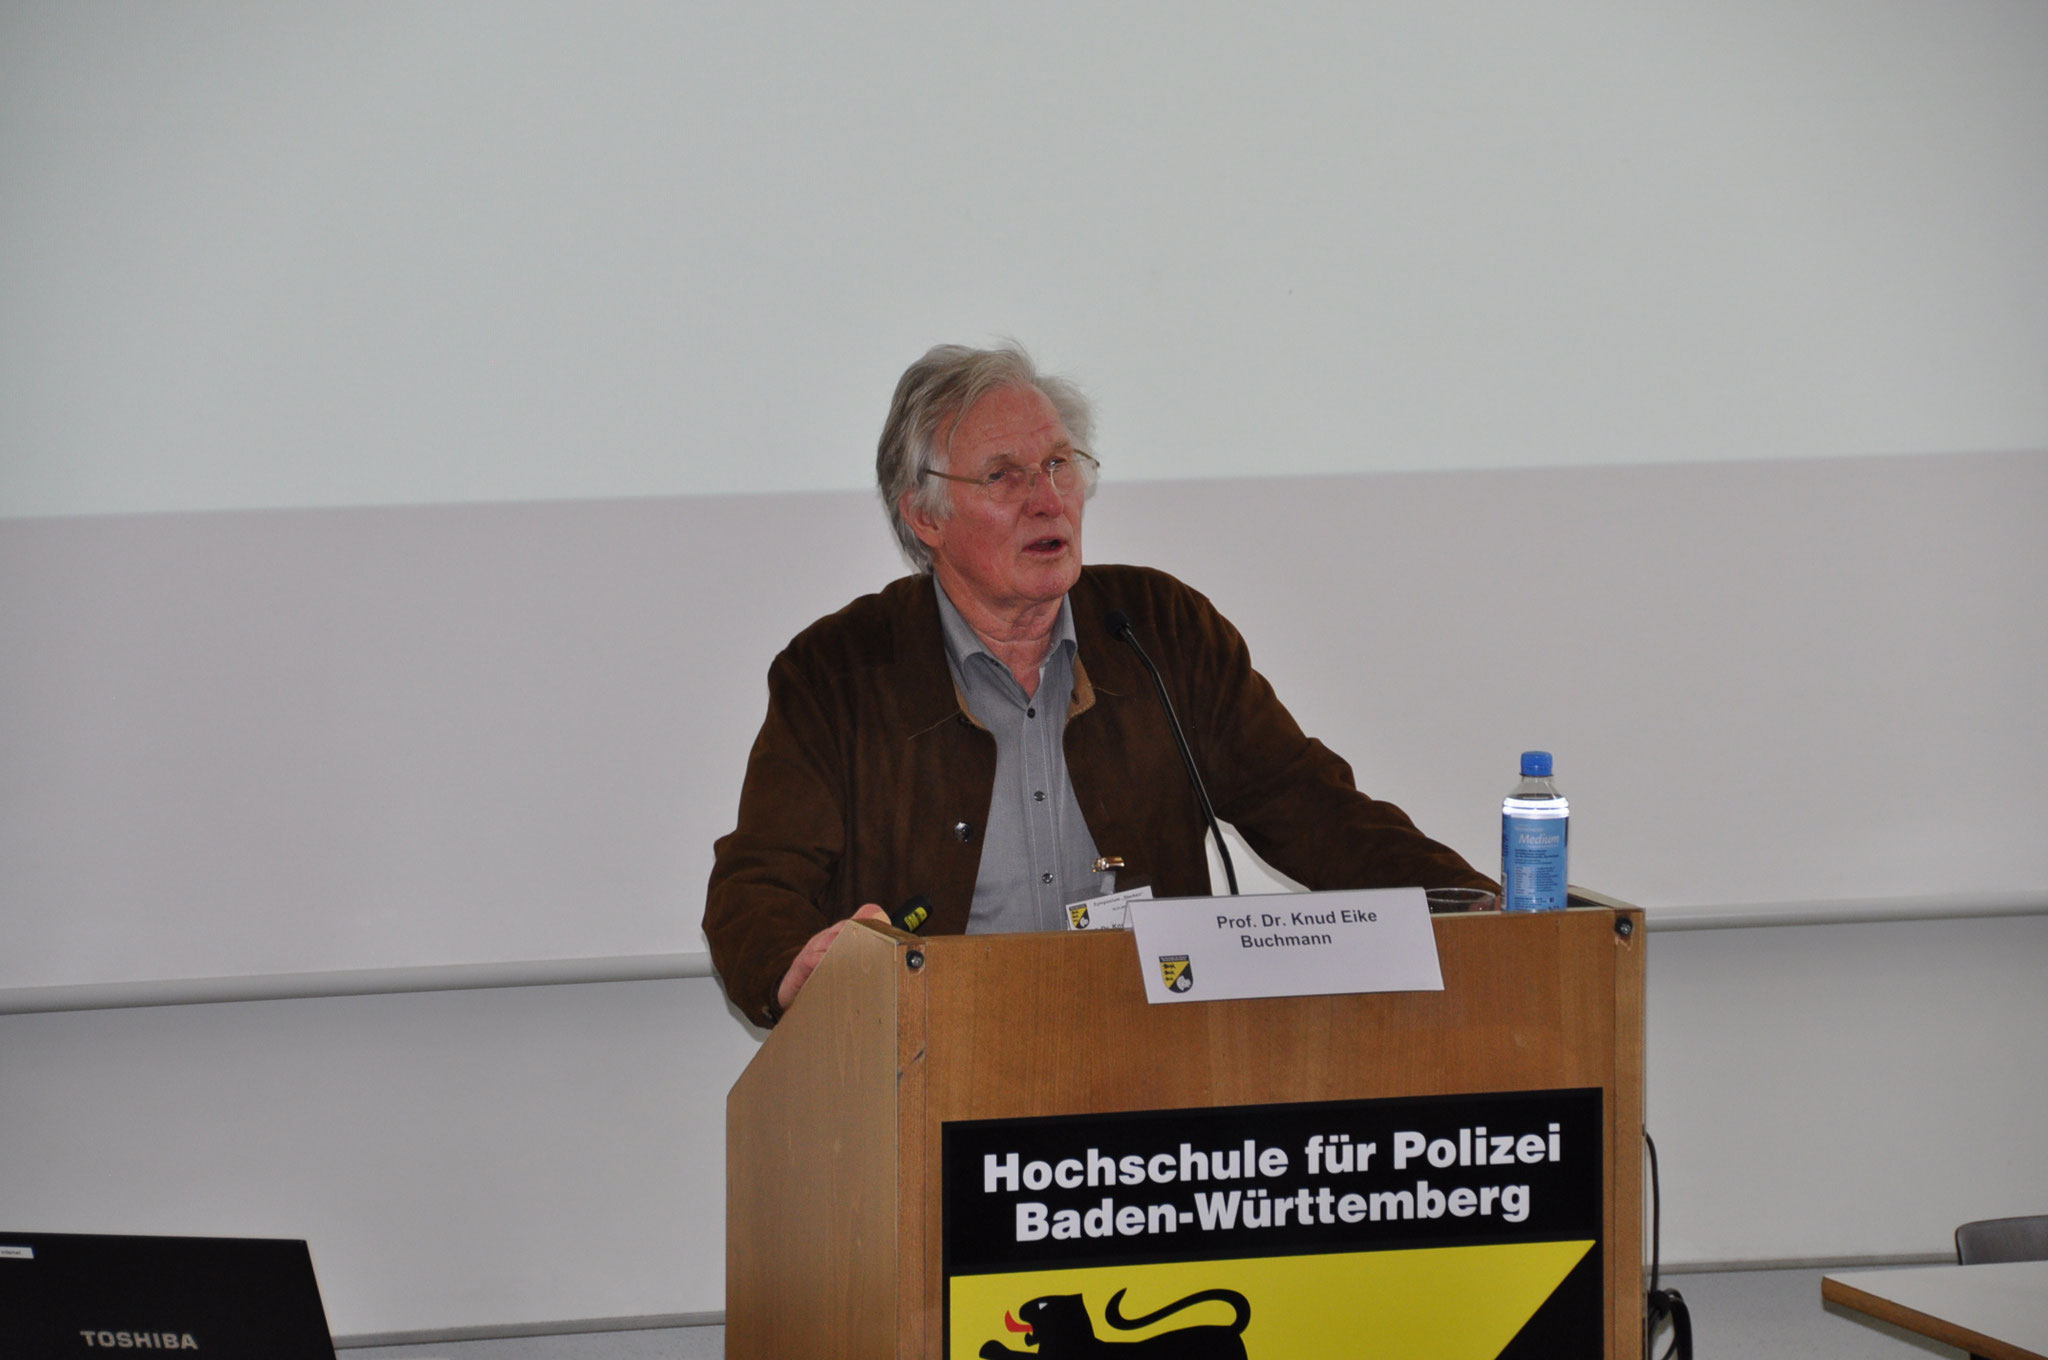 Referent Prof. Dr. Knud Eike Buchmann " Kann man das Sterben lernen?"